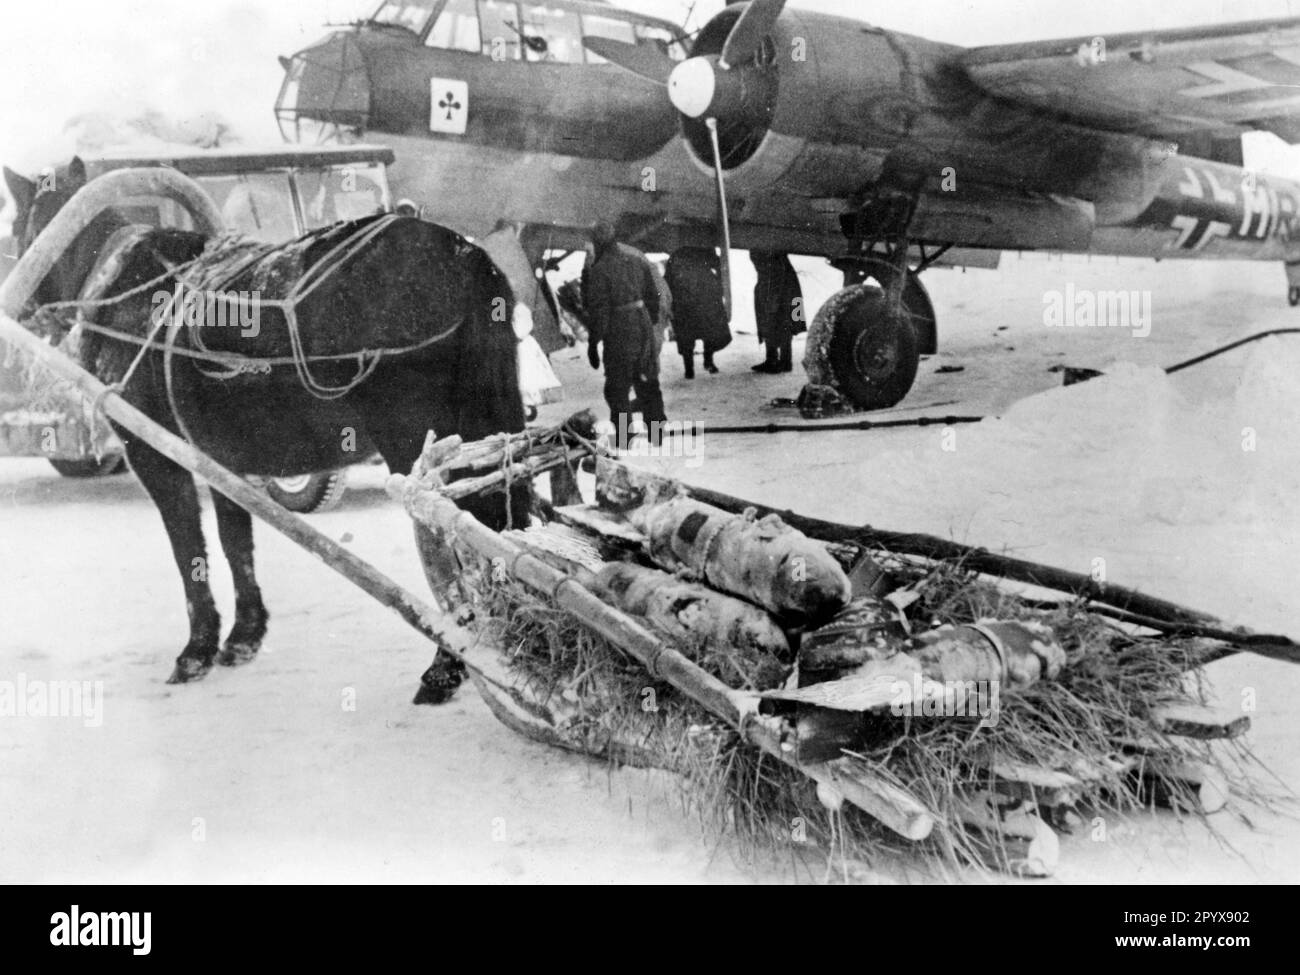 Junkers Ju 88 avion de chasse du Fighter Squadron 3 (ace de clubs sur le rempart) sur un terrain d'aviation dans la section centrale du Front de l'est en novembre 1942. Un traîneau de Panjes apporte la charge de la bombe de l'avion. [traduction automatique] Banque D'Images